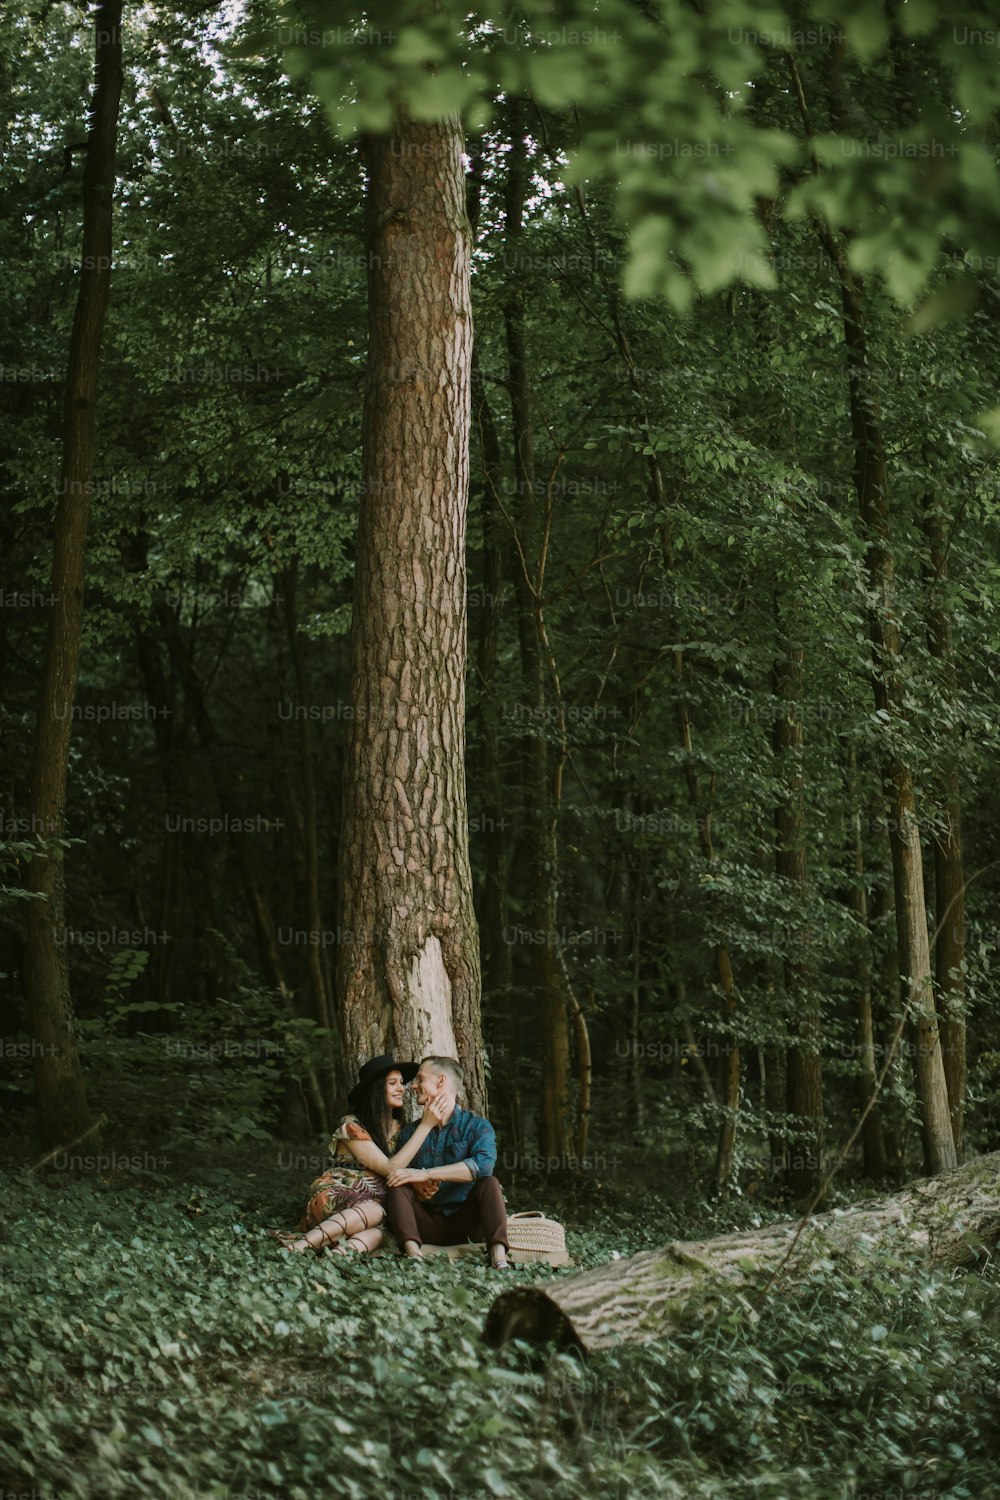 행복한 젊은 가족, 남자와 여자, 숲에서 산책을 즐기고, 큰 나무 아래에 앉아 포옹하고 키스하는 야외 전체 길이 샷. 숲속의 나무 아래에 앉아 있는 임신한 부부